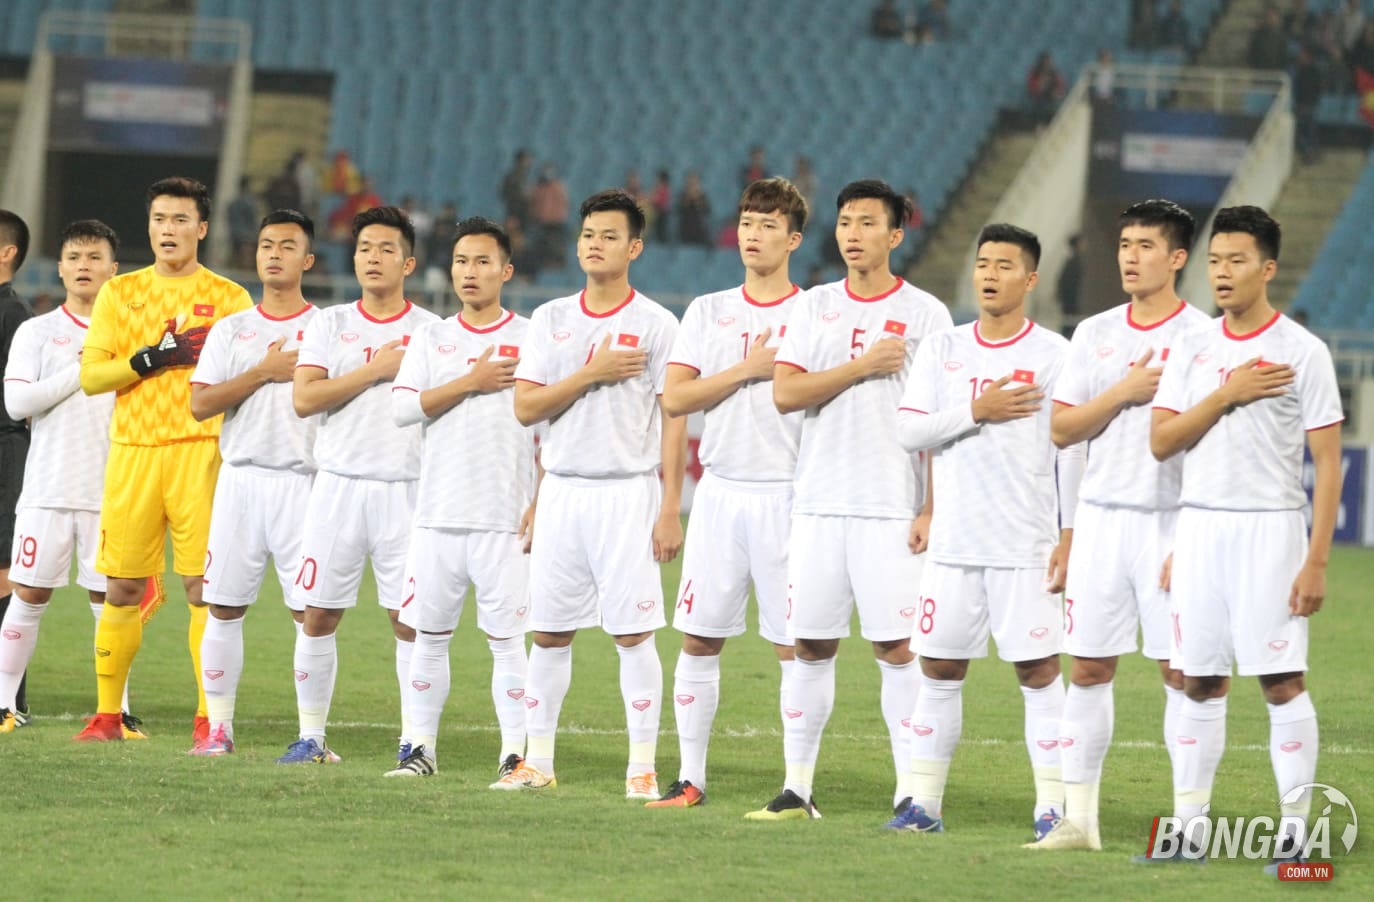 TRỰC TIẾP U23 Việt Nam 0-0 U23 Indonesia: Trận đấu bắt đầu - Bóng Đá